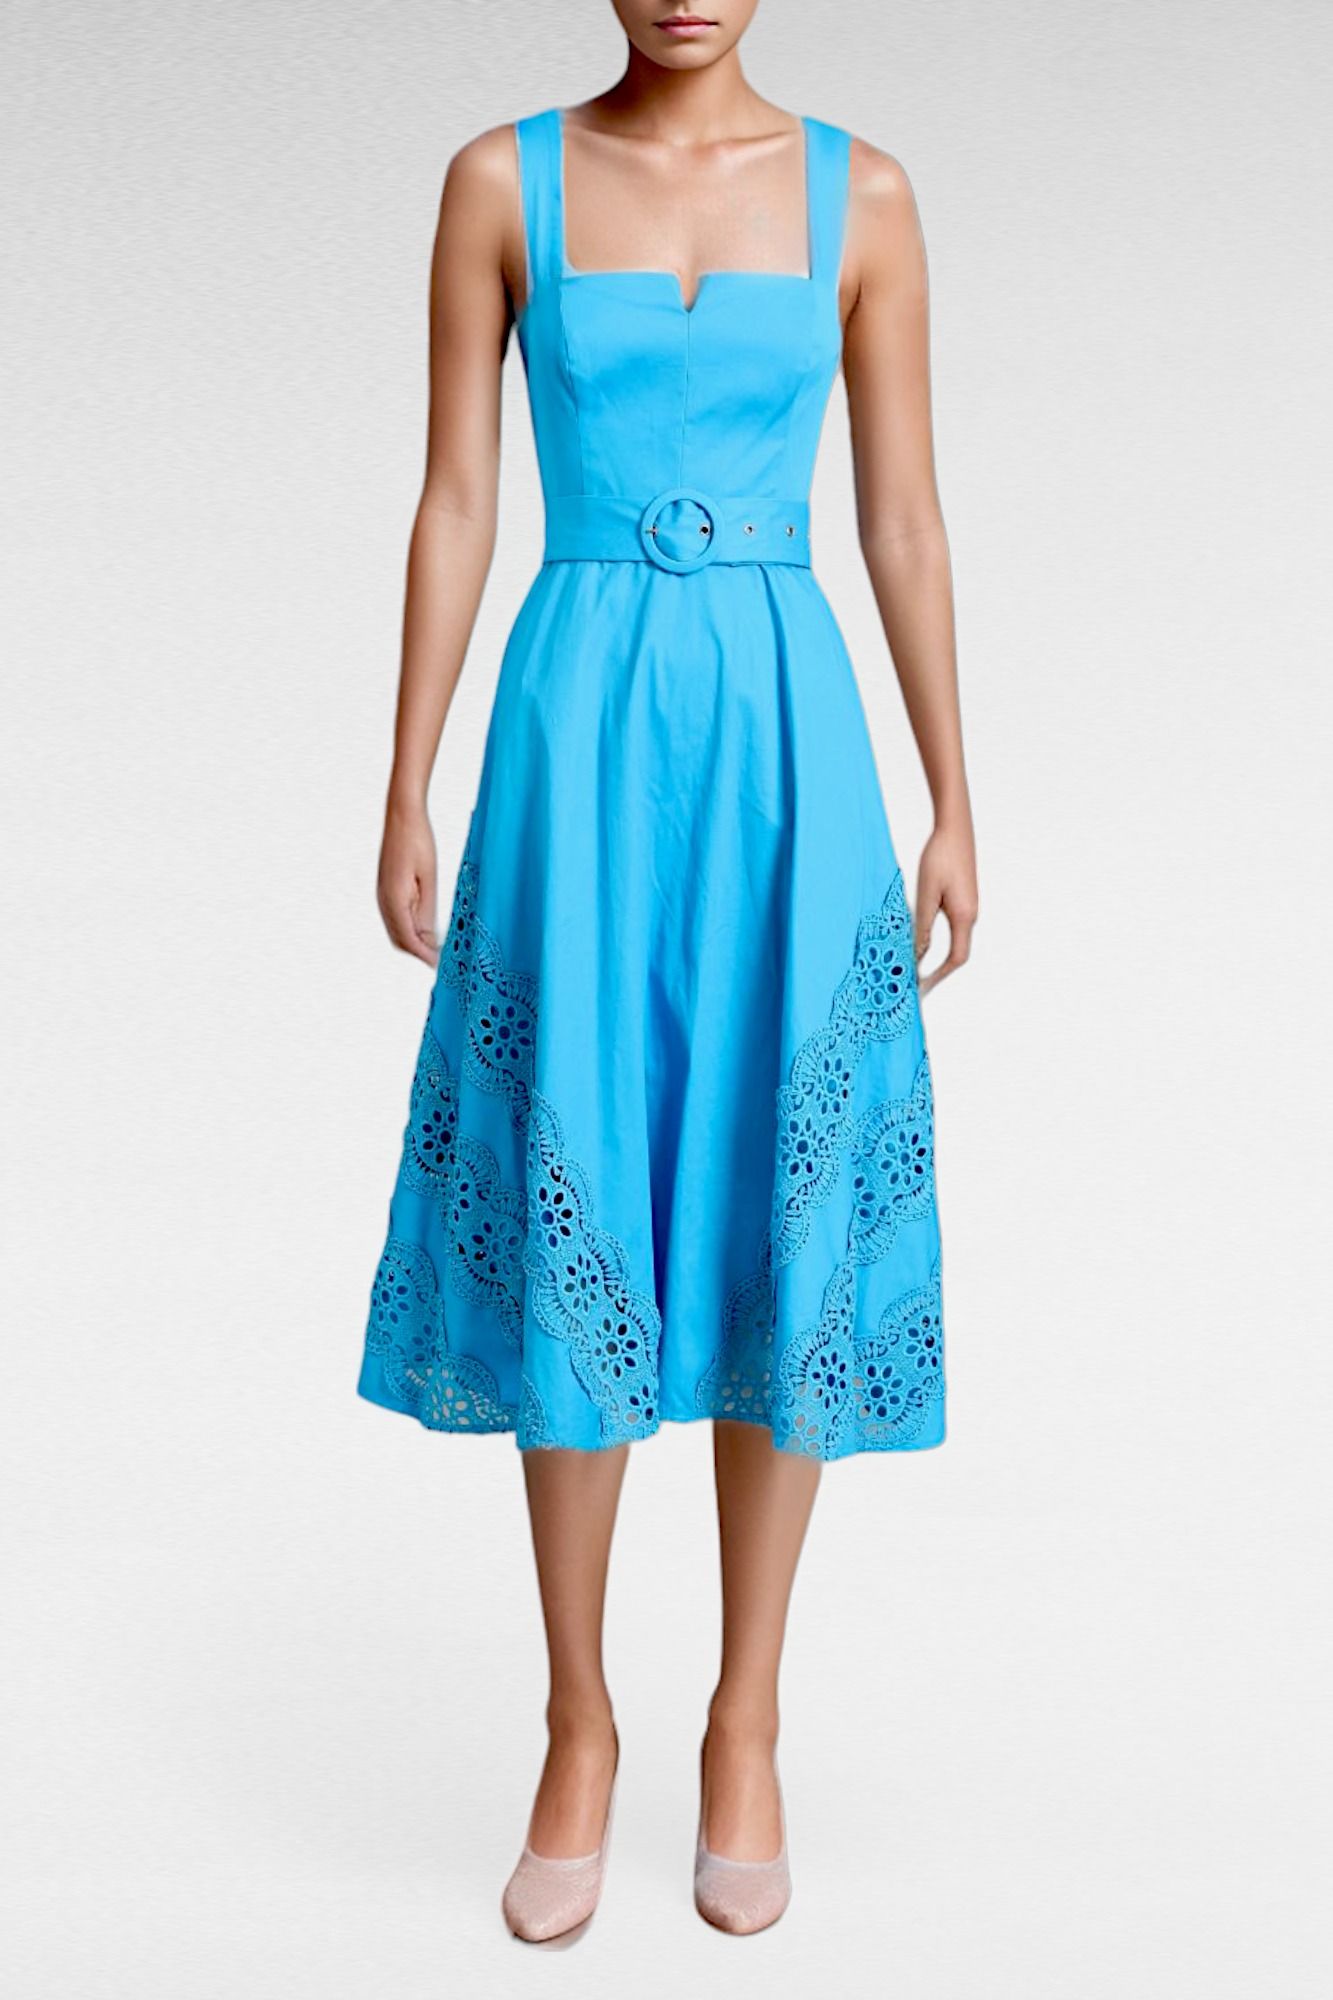 Portmans Summer Azure Belted Sleeveless Dress